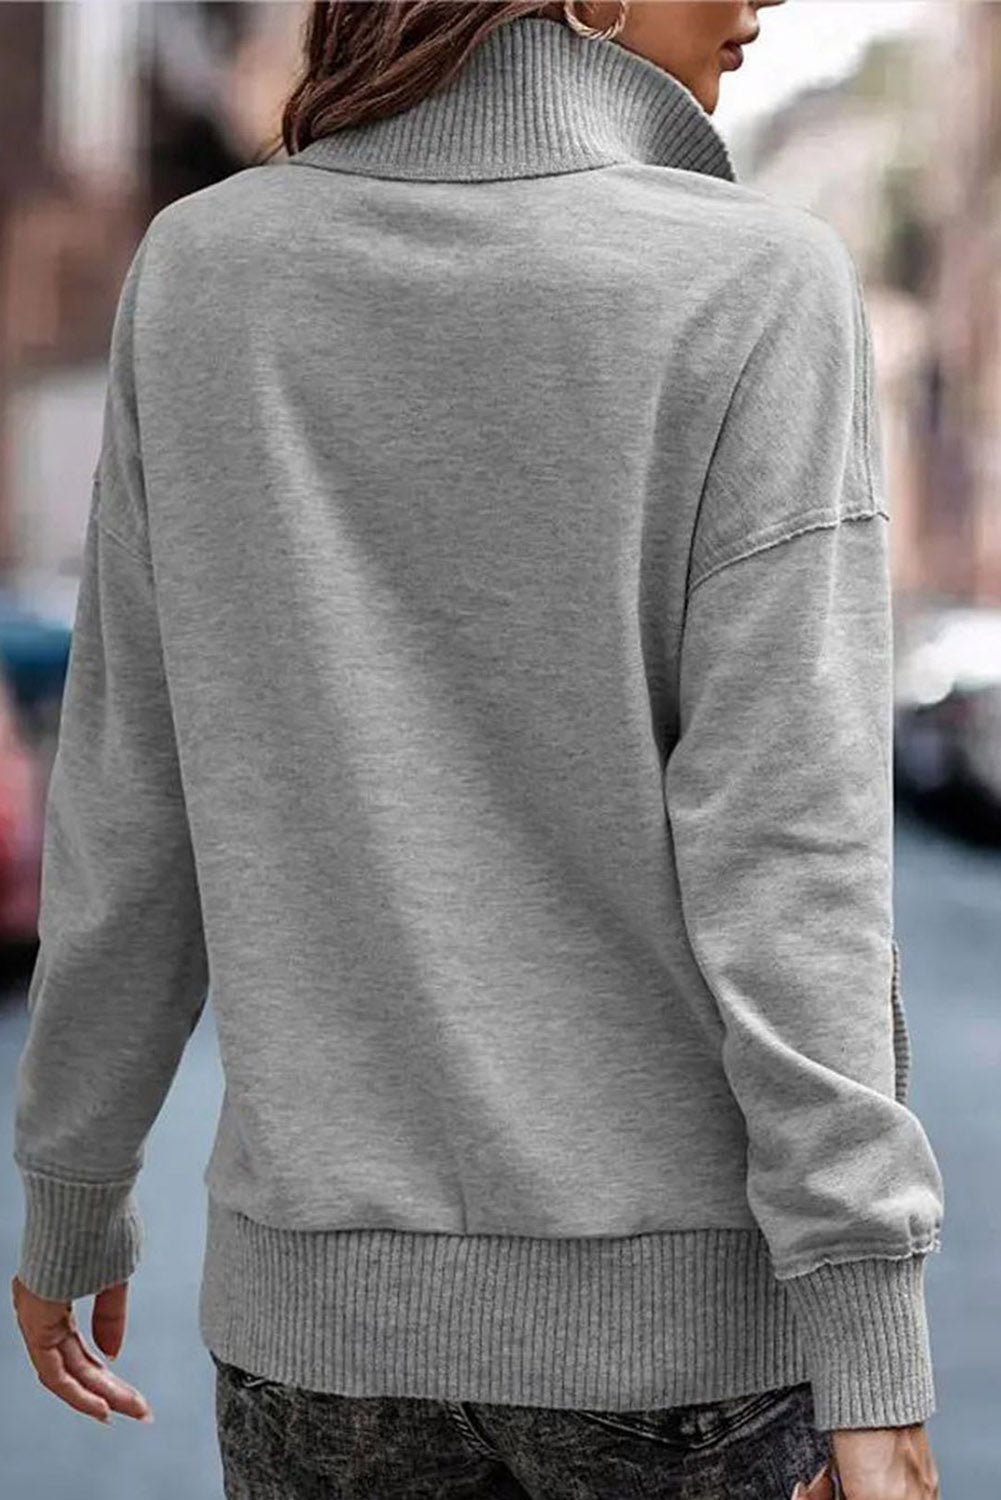 White Ribbed Trim Snap Button Collar Kangaroo Pocket Sweatshirt